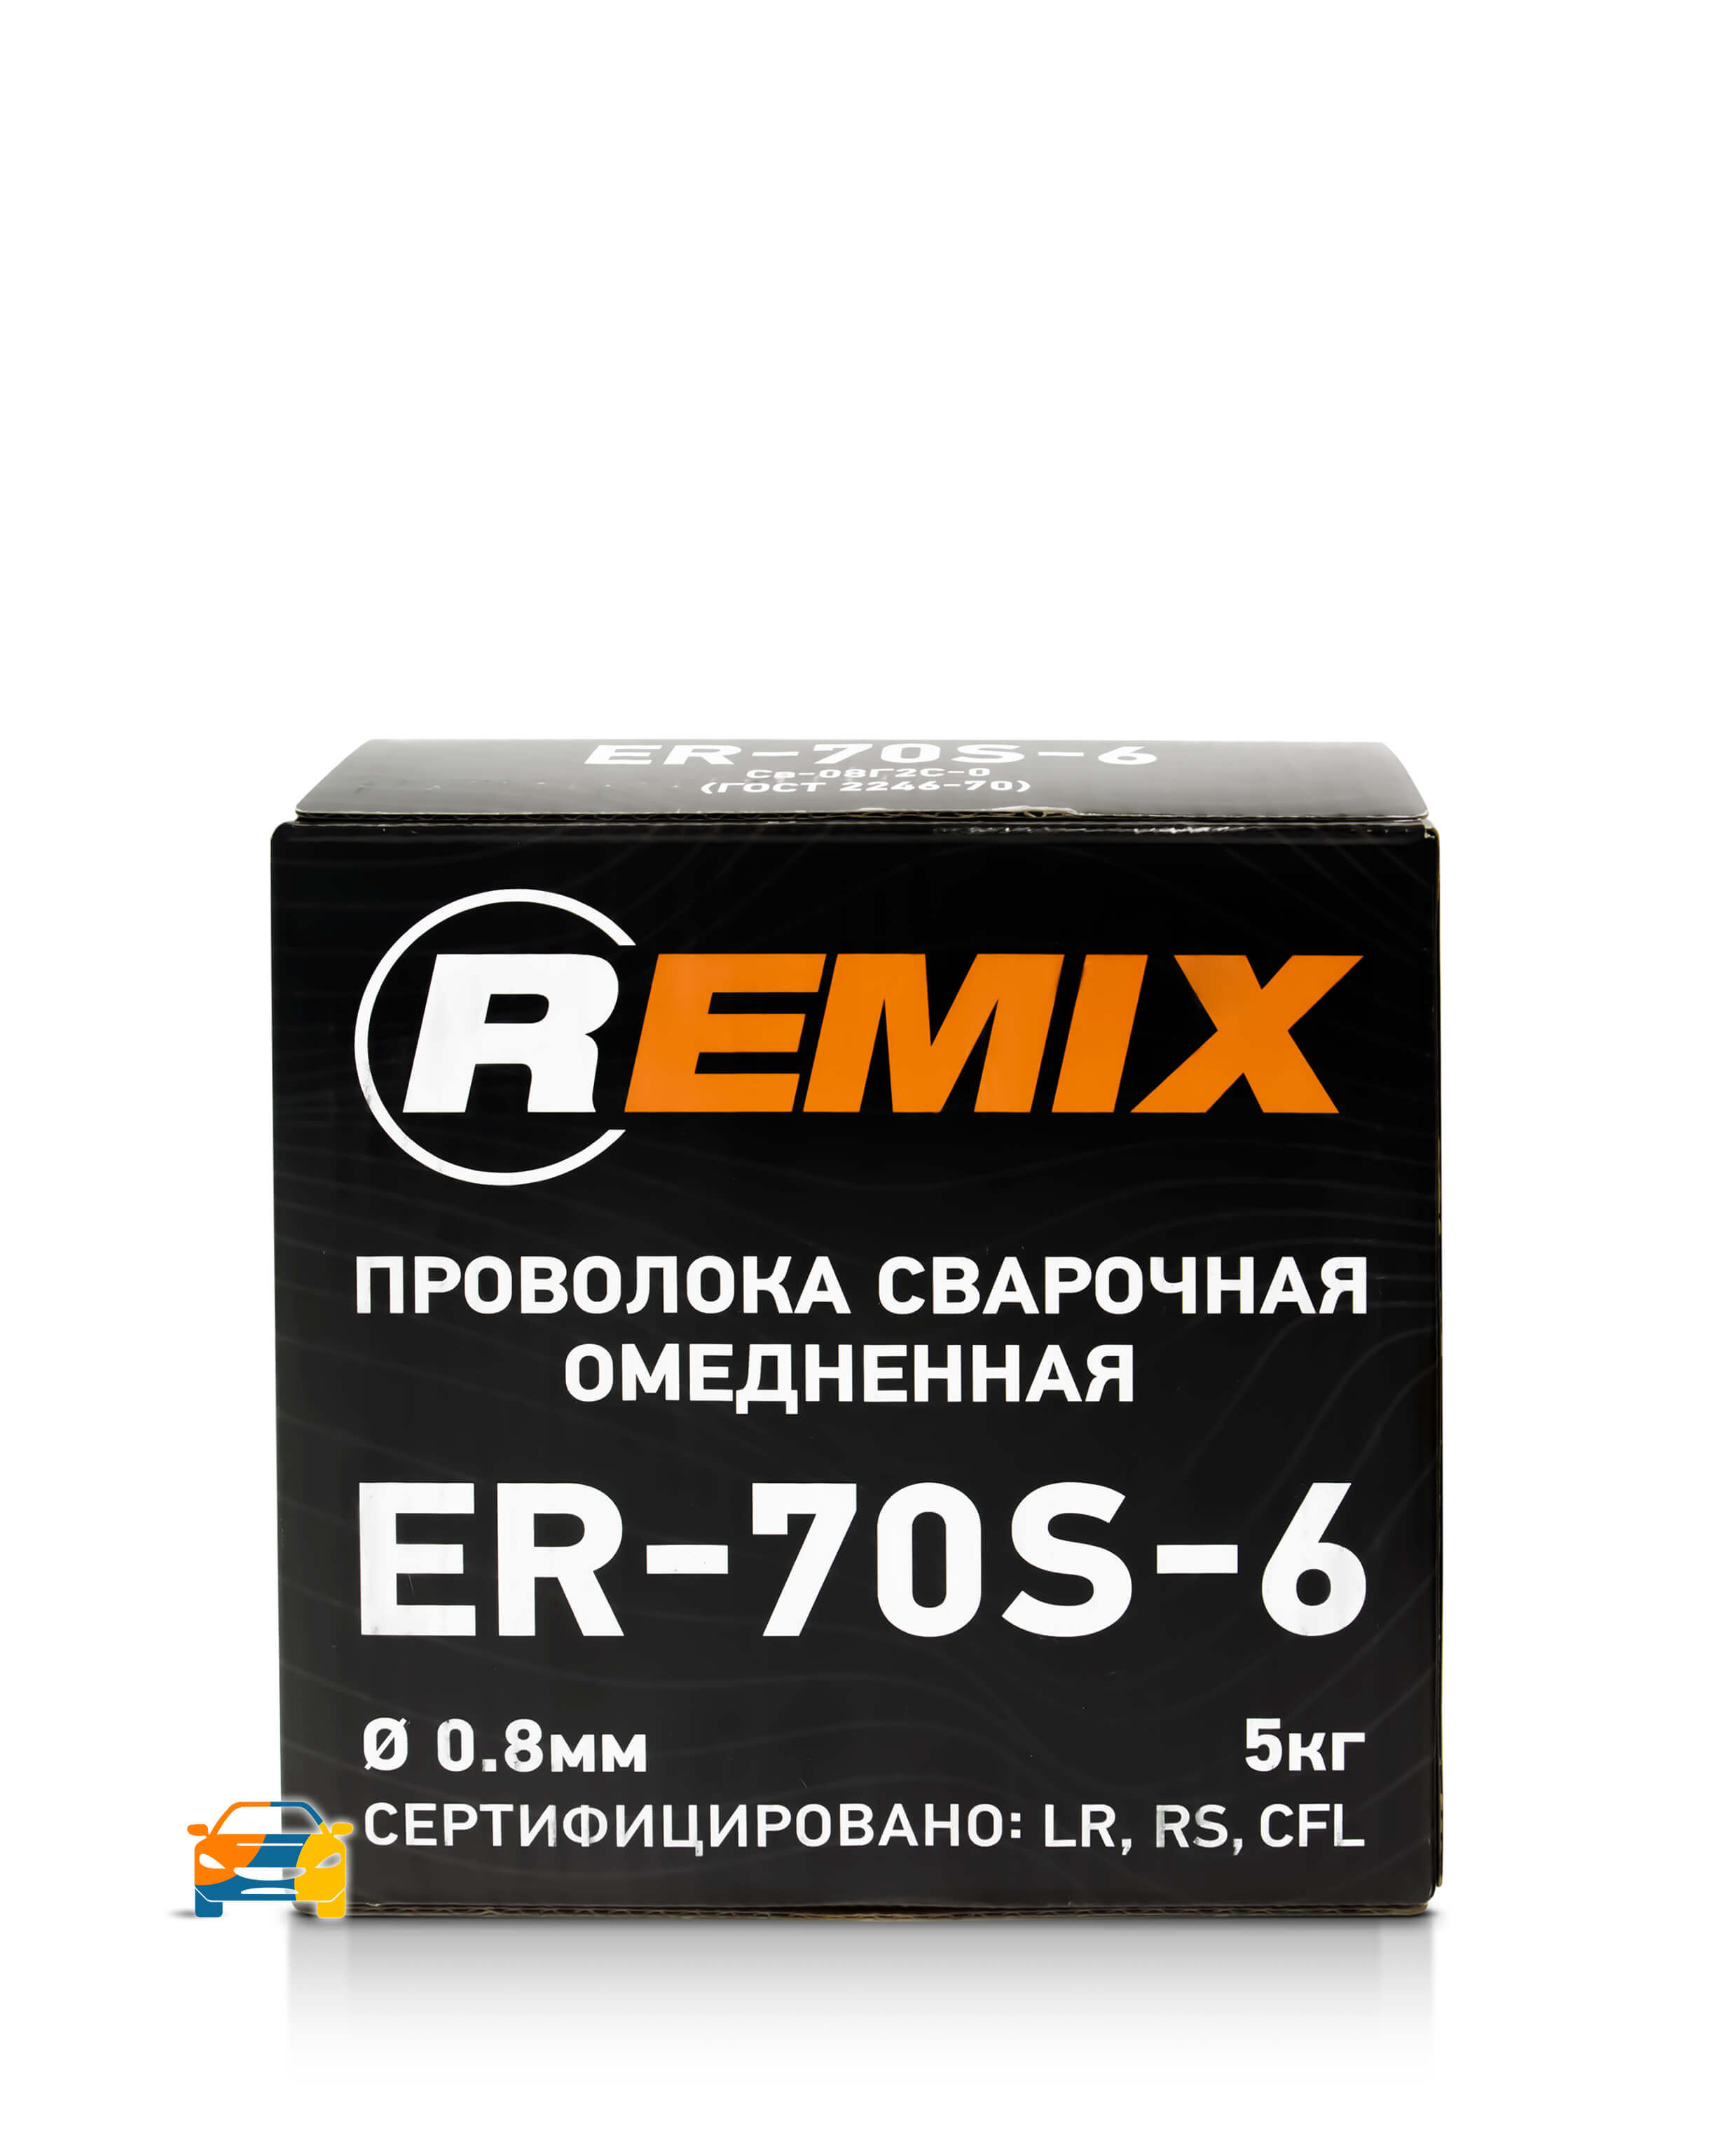 Проволока сварочная Remix ER-70S-6